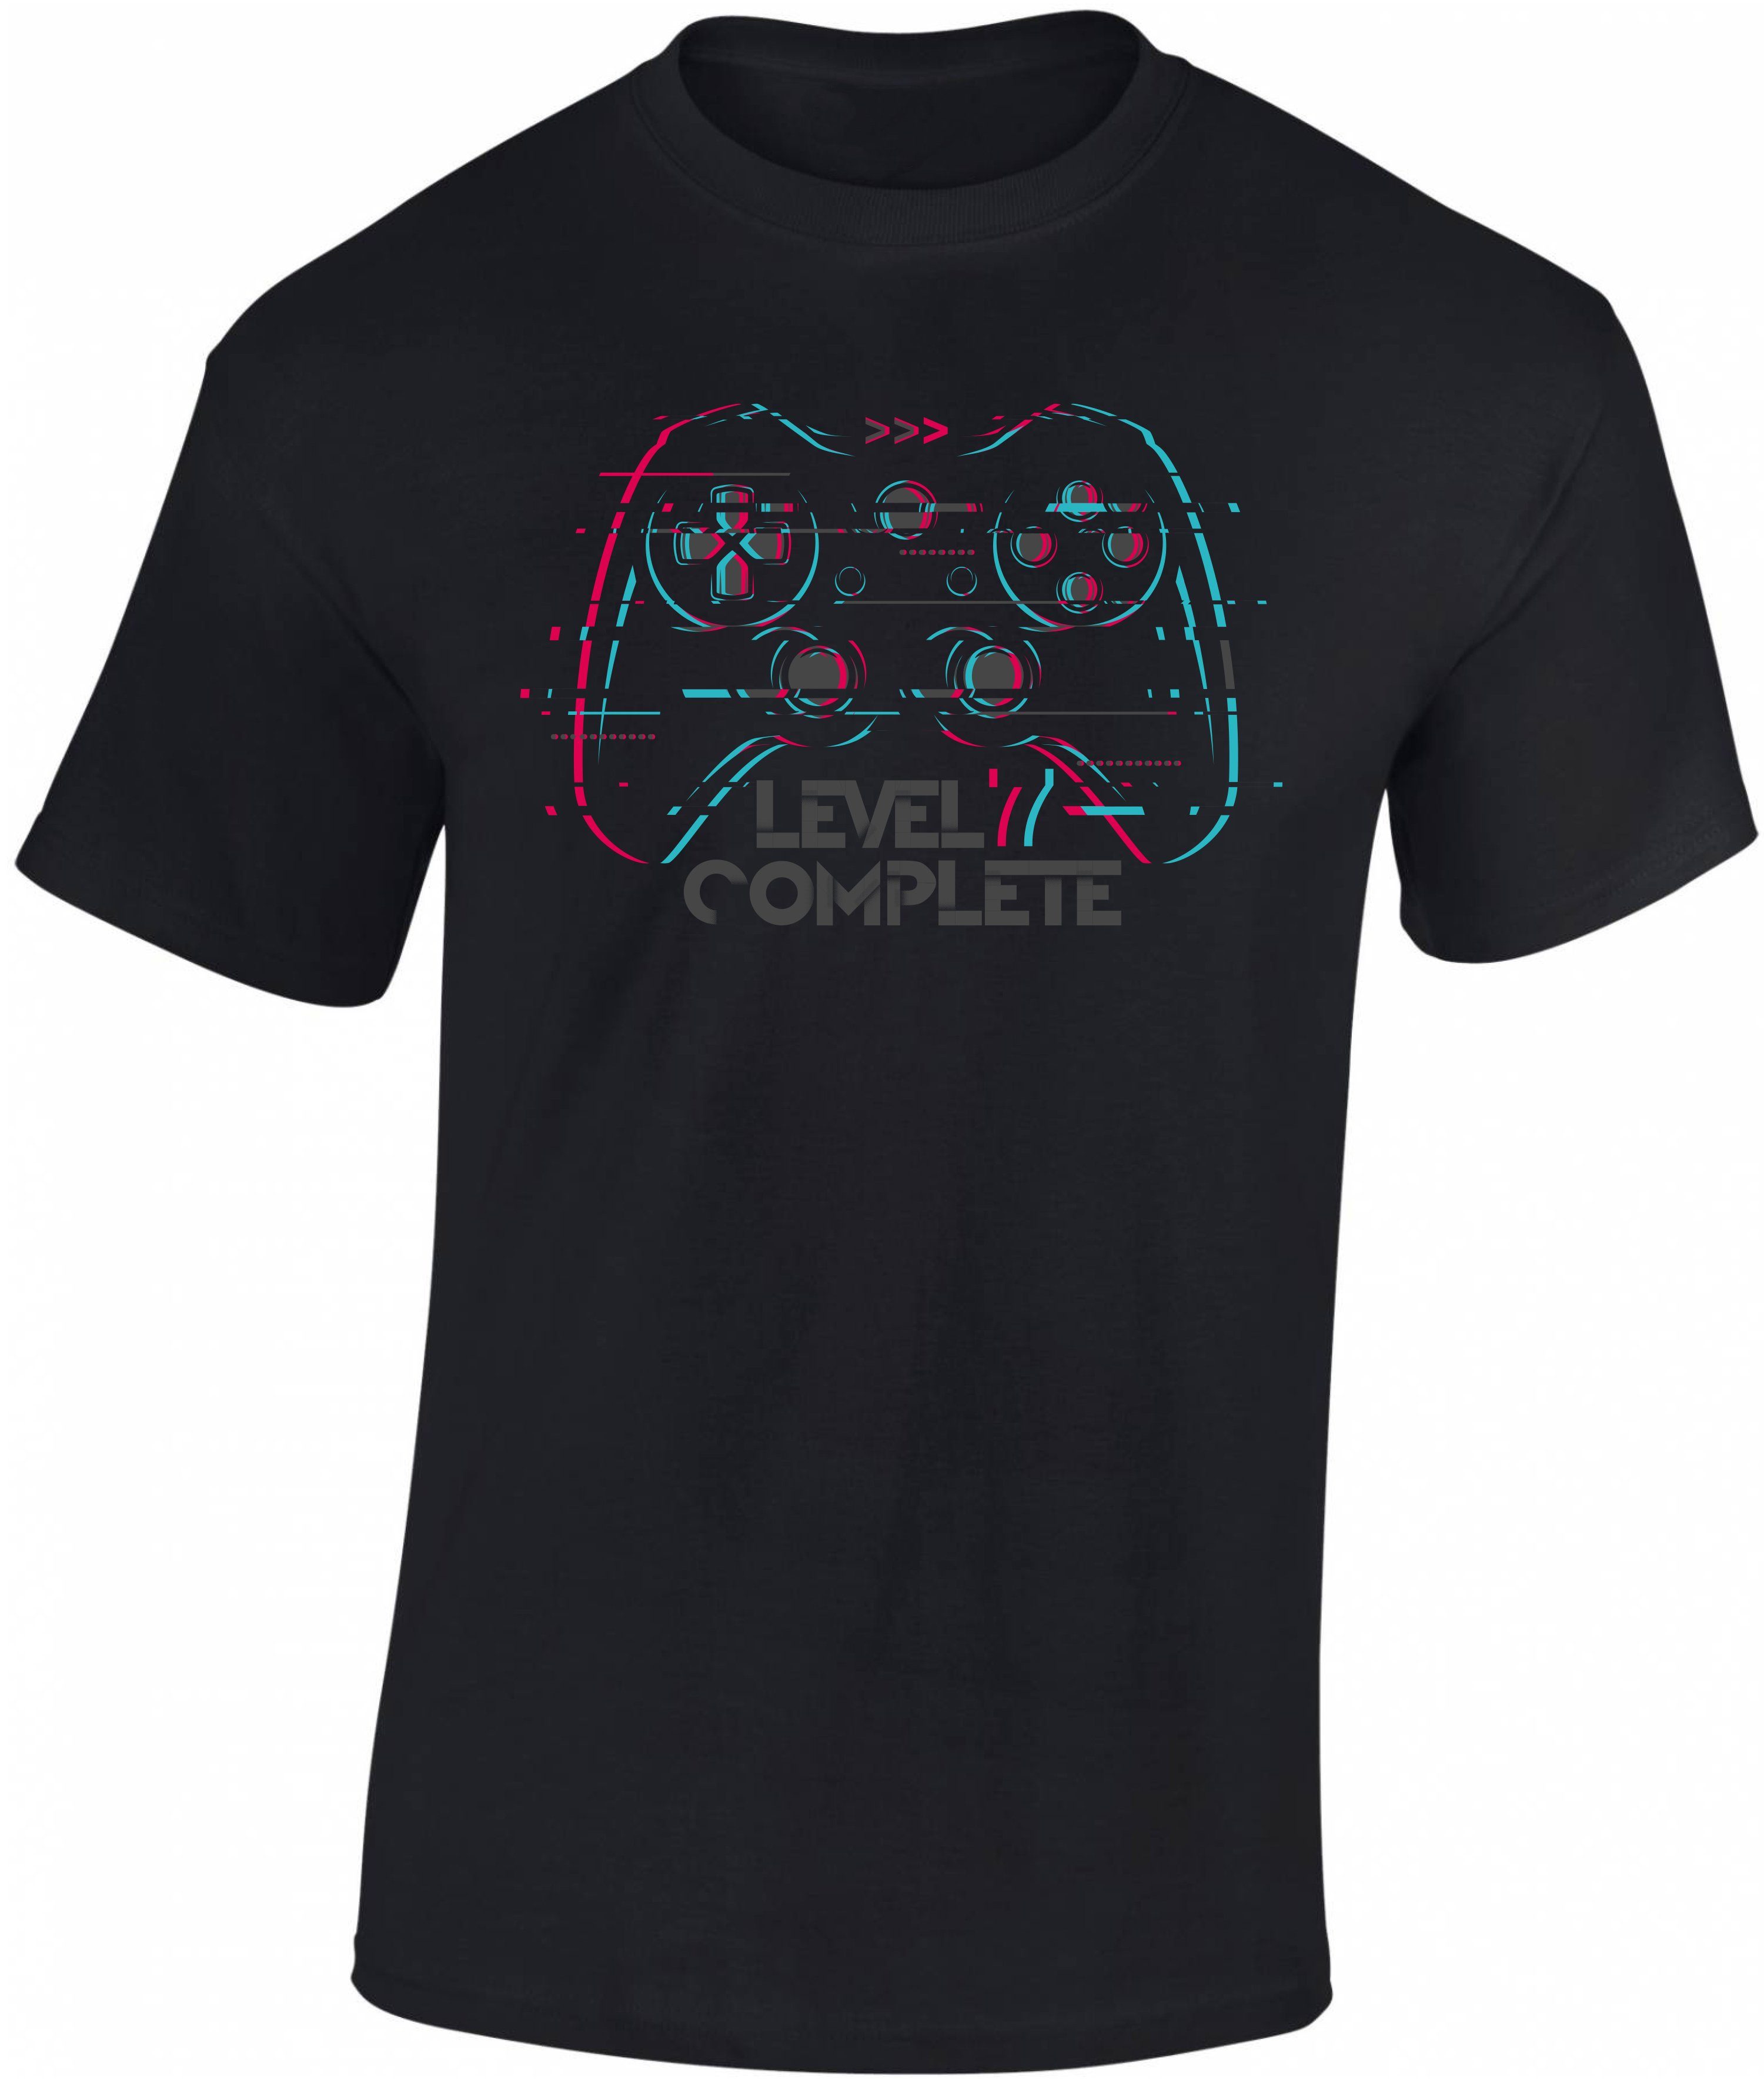 Baddery Print-Shirt Jungen Gamer T-Shirt zum 7. Geburtstag : Level 7 Complete hochwertiger Siebdruck, aus Baumwolle